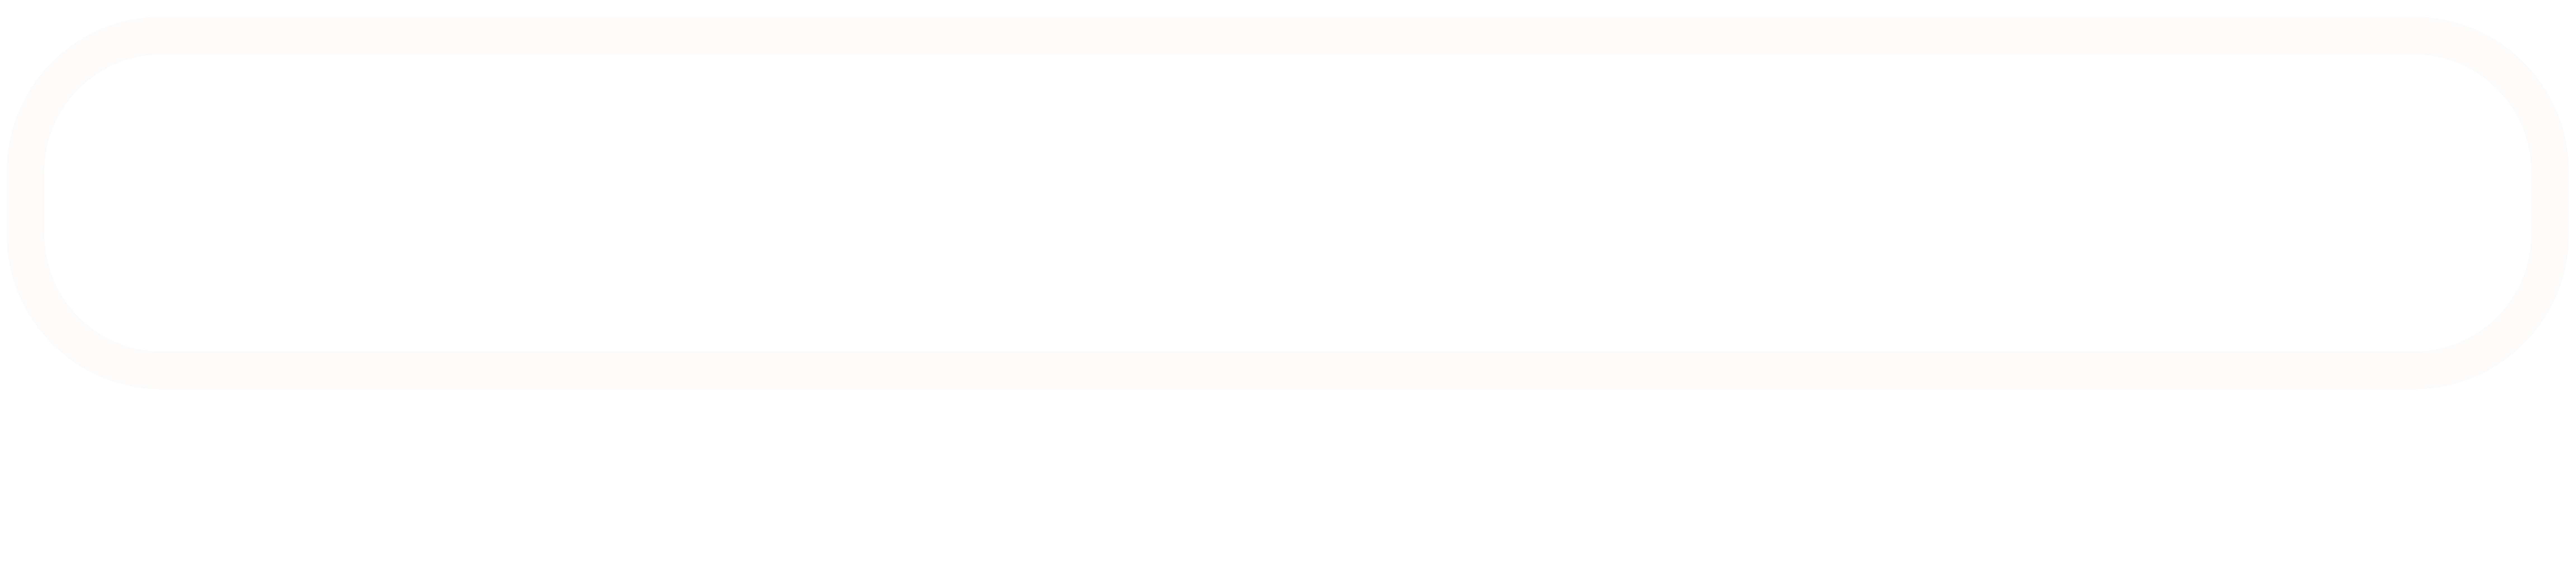 Willem van Boekel – Spreker & Coach